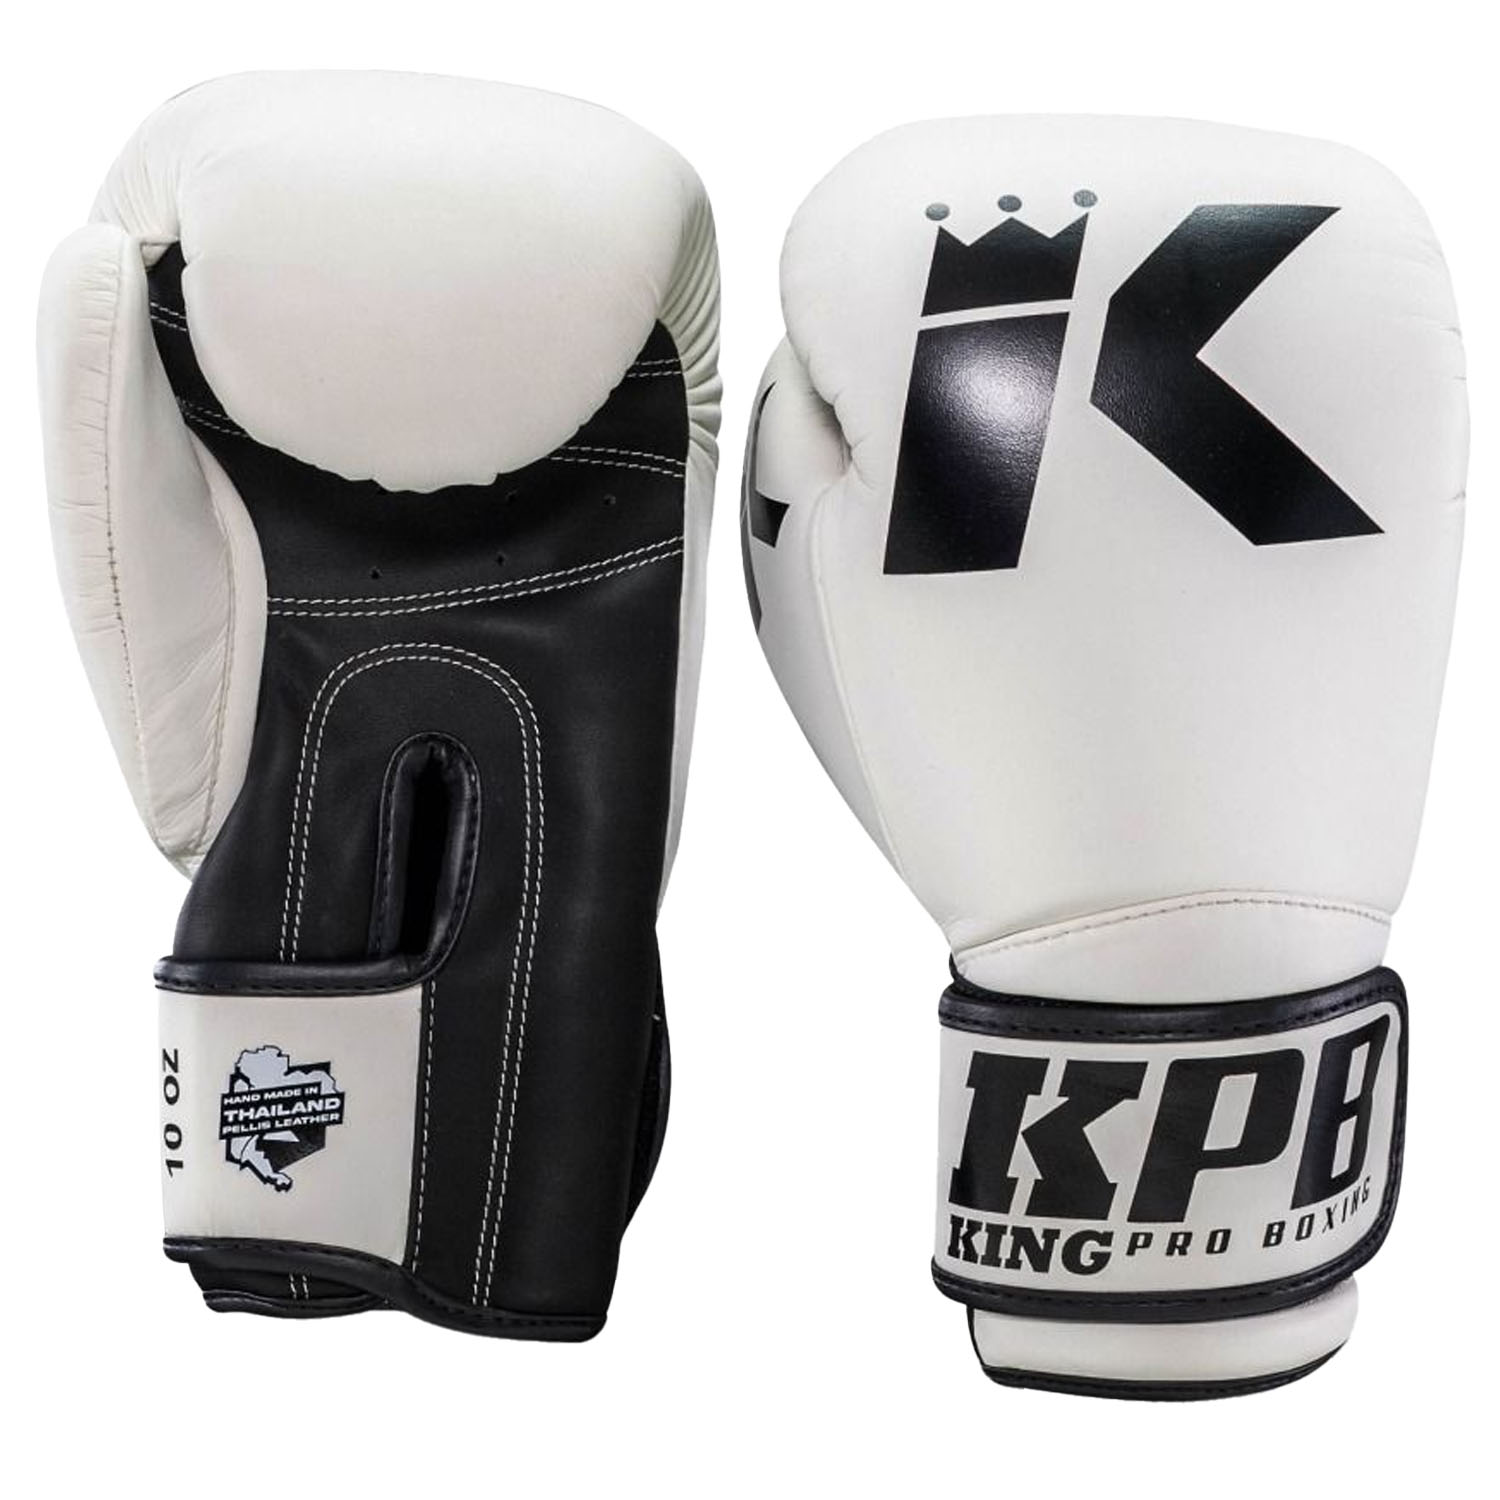 KING PRO BOXING Boxing Gloves, BGK 2, white, 12 Oz